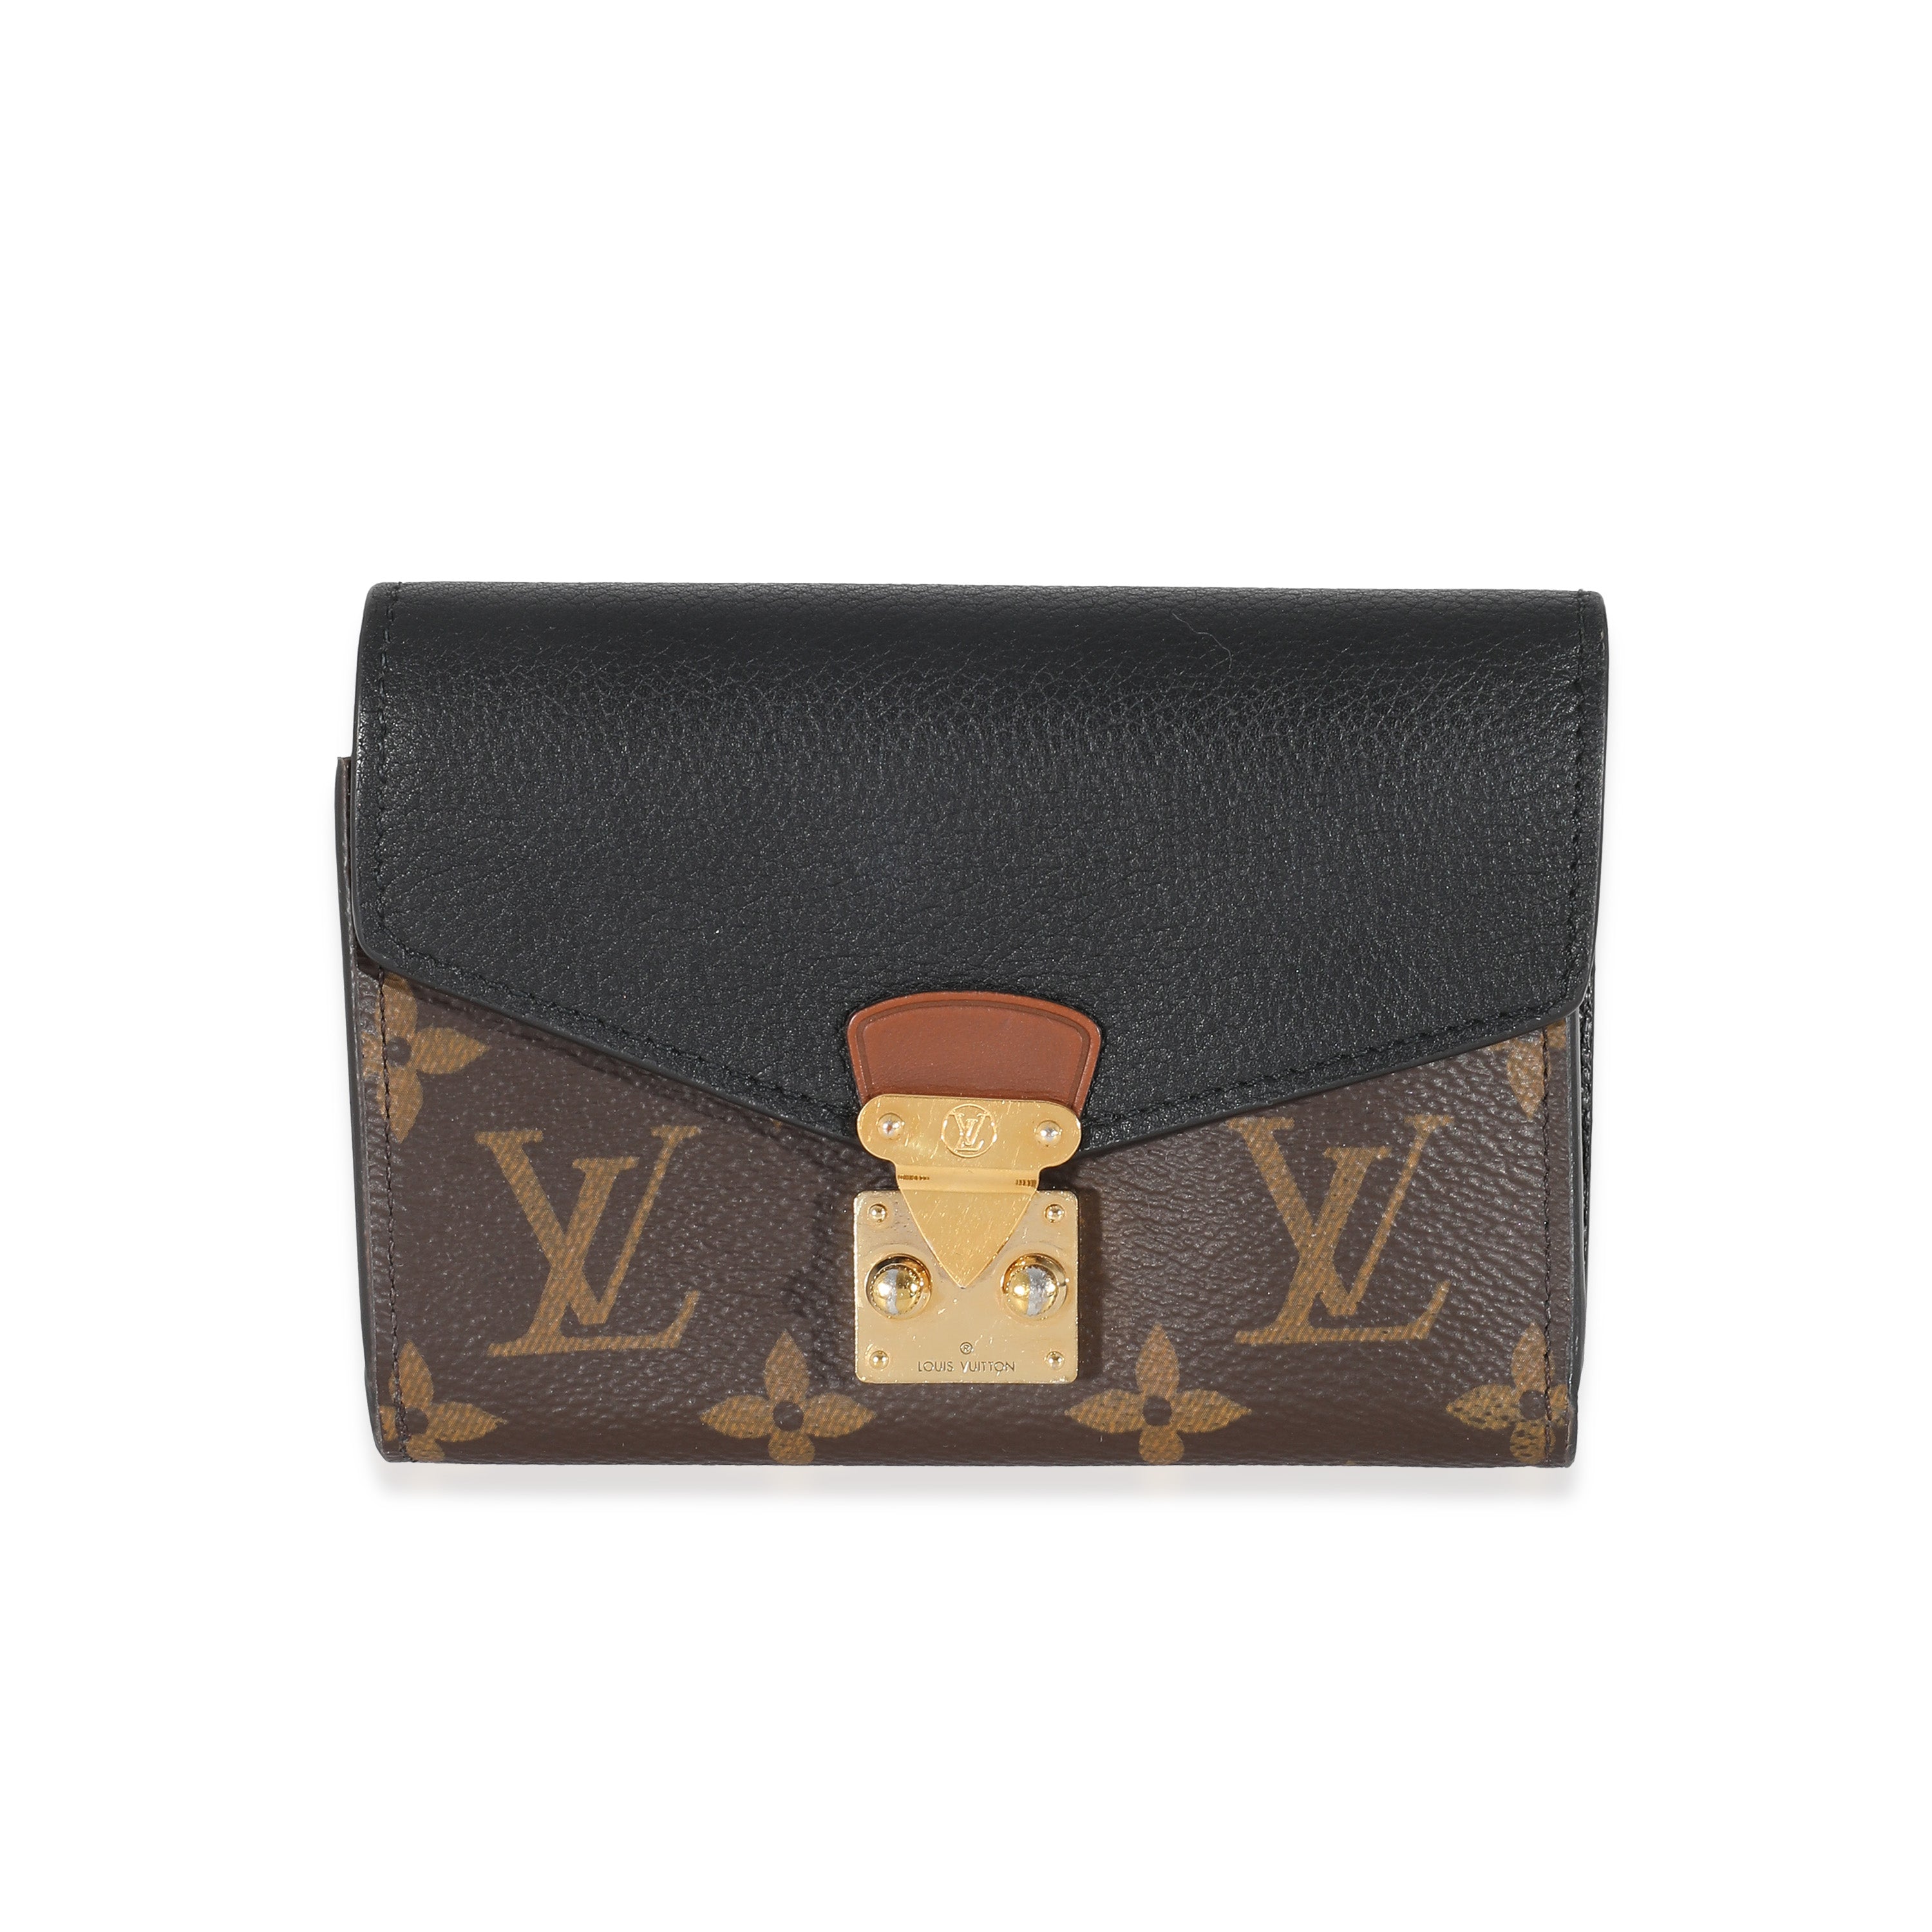 Louis Vuitton Black Monogram Empreinte Victorine Wallet, myGemma